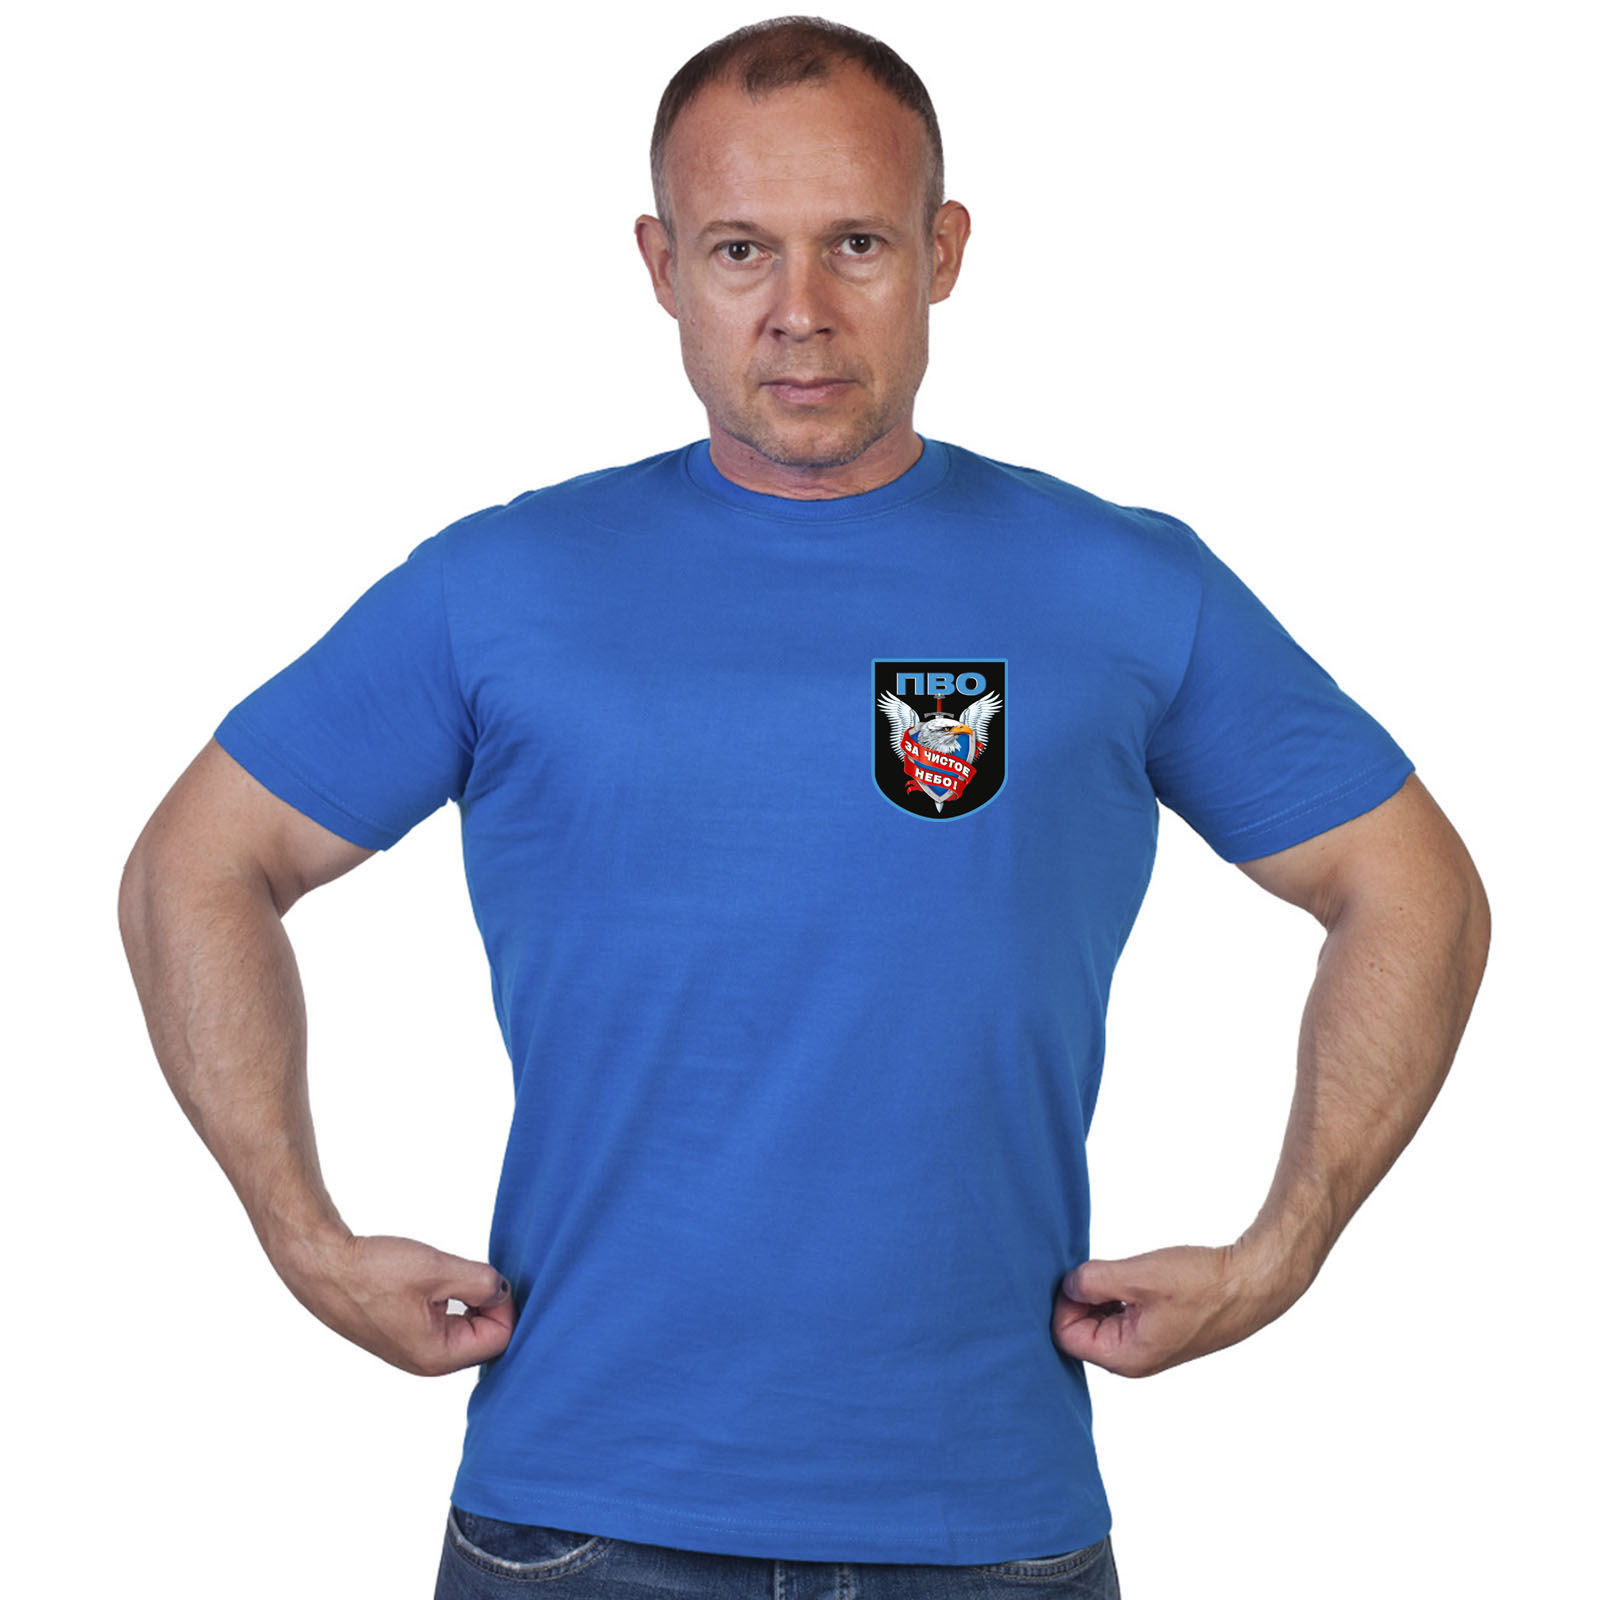 Васильковая футболка с термотрансфером "ПВО" 